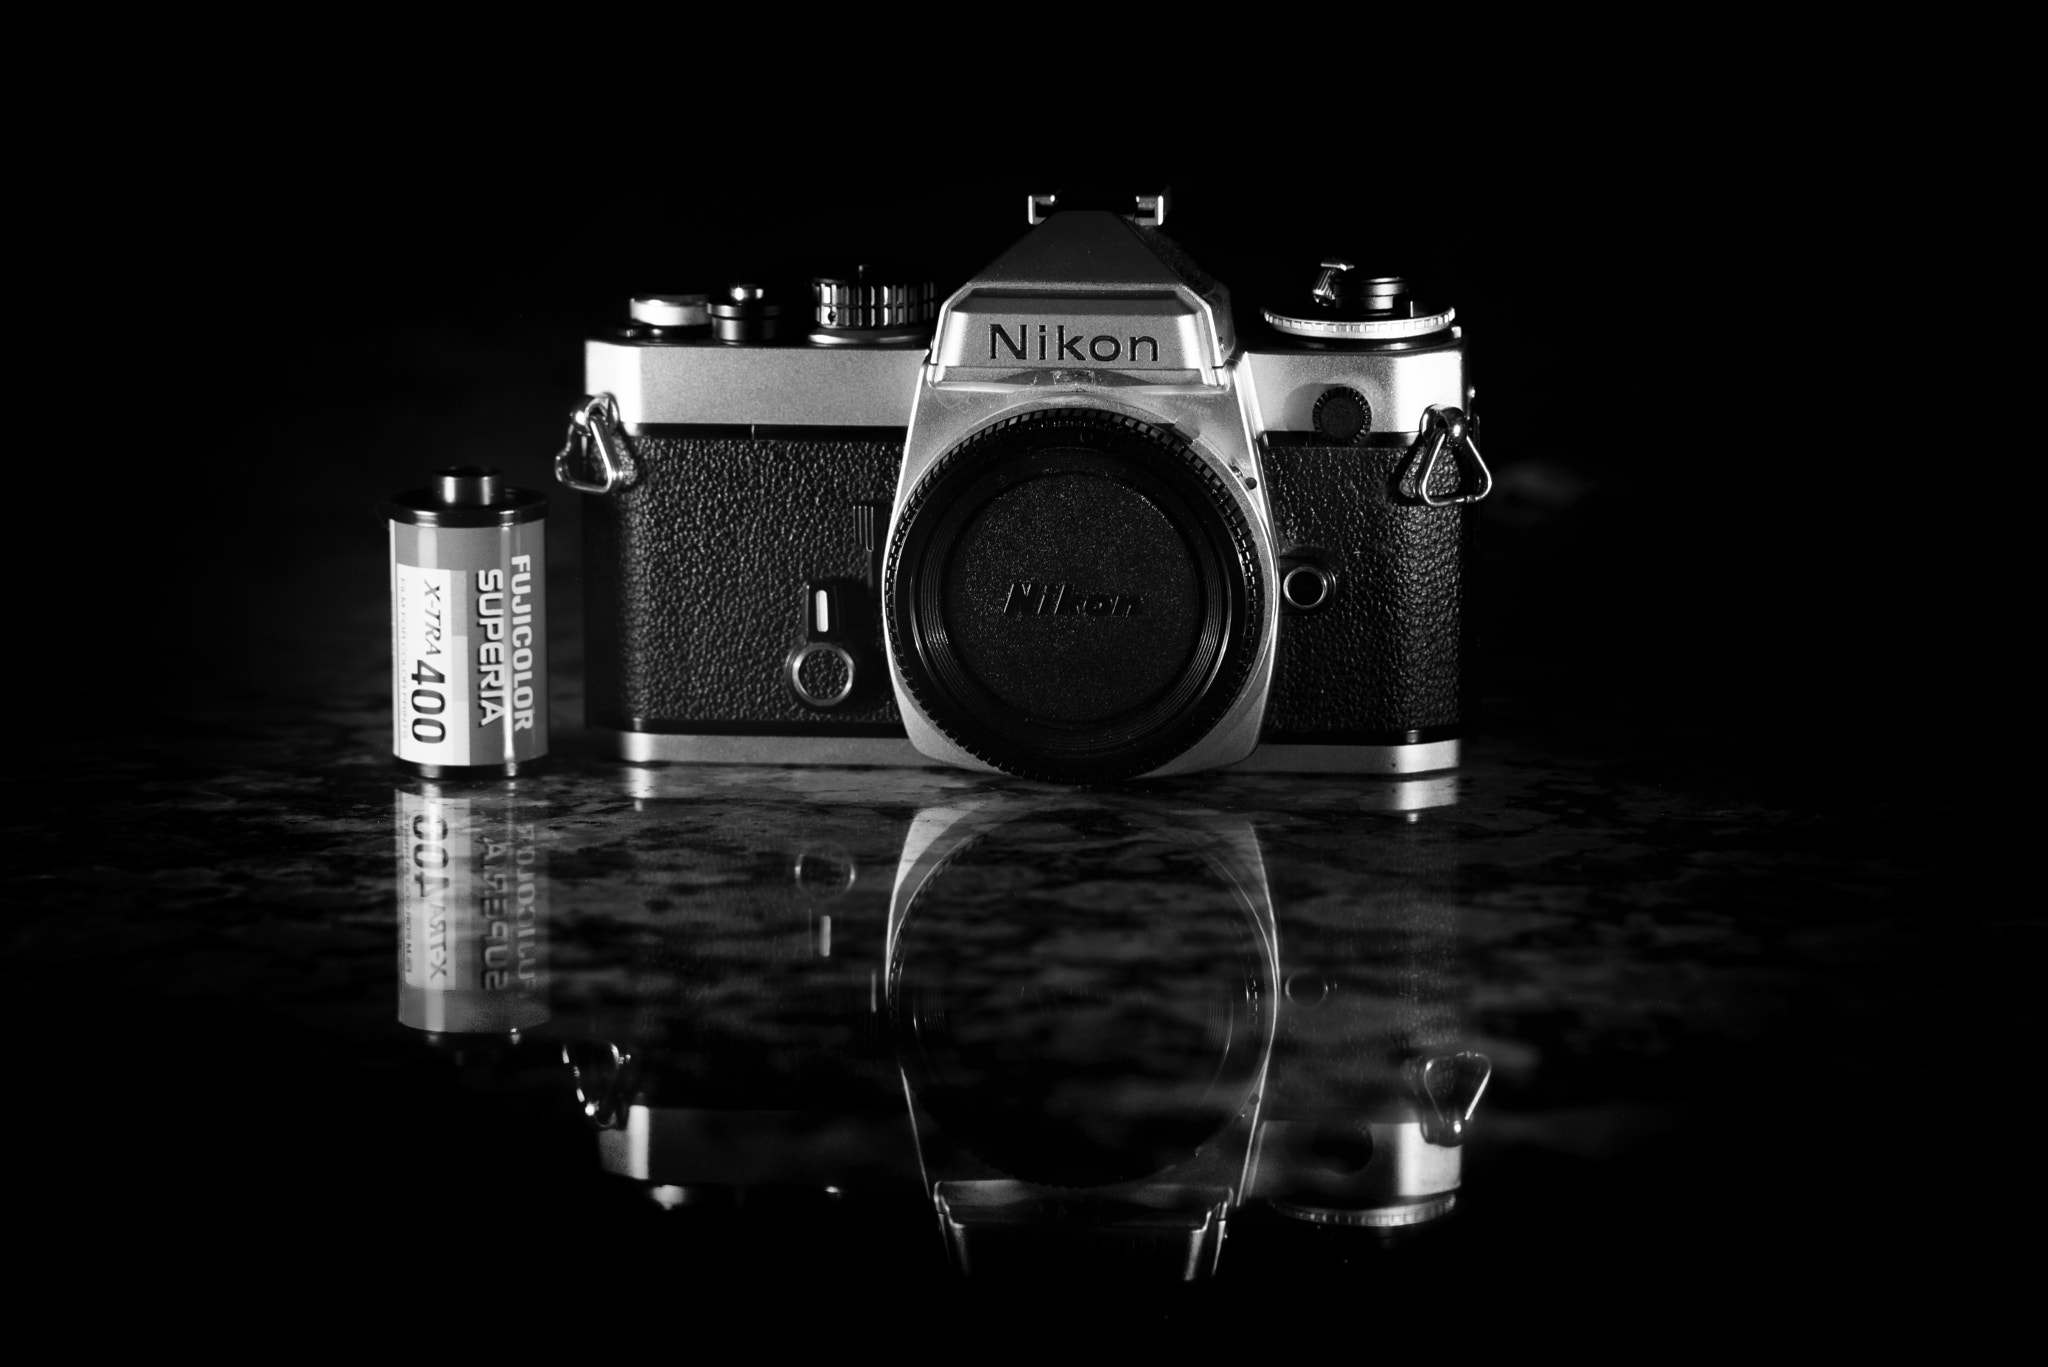 Nikon D600 + Nikon AF-Nikkor 80-200mm F2.8D ED sample photo. Week 7 of my 52 week challenge: forgotten photography